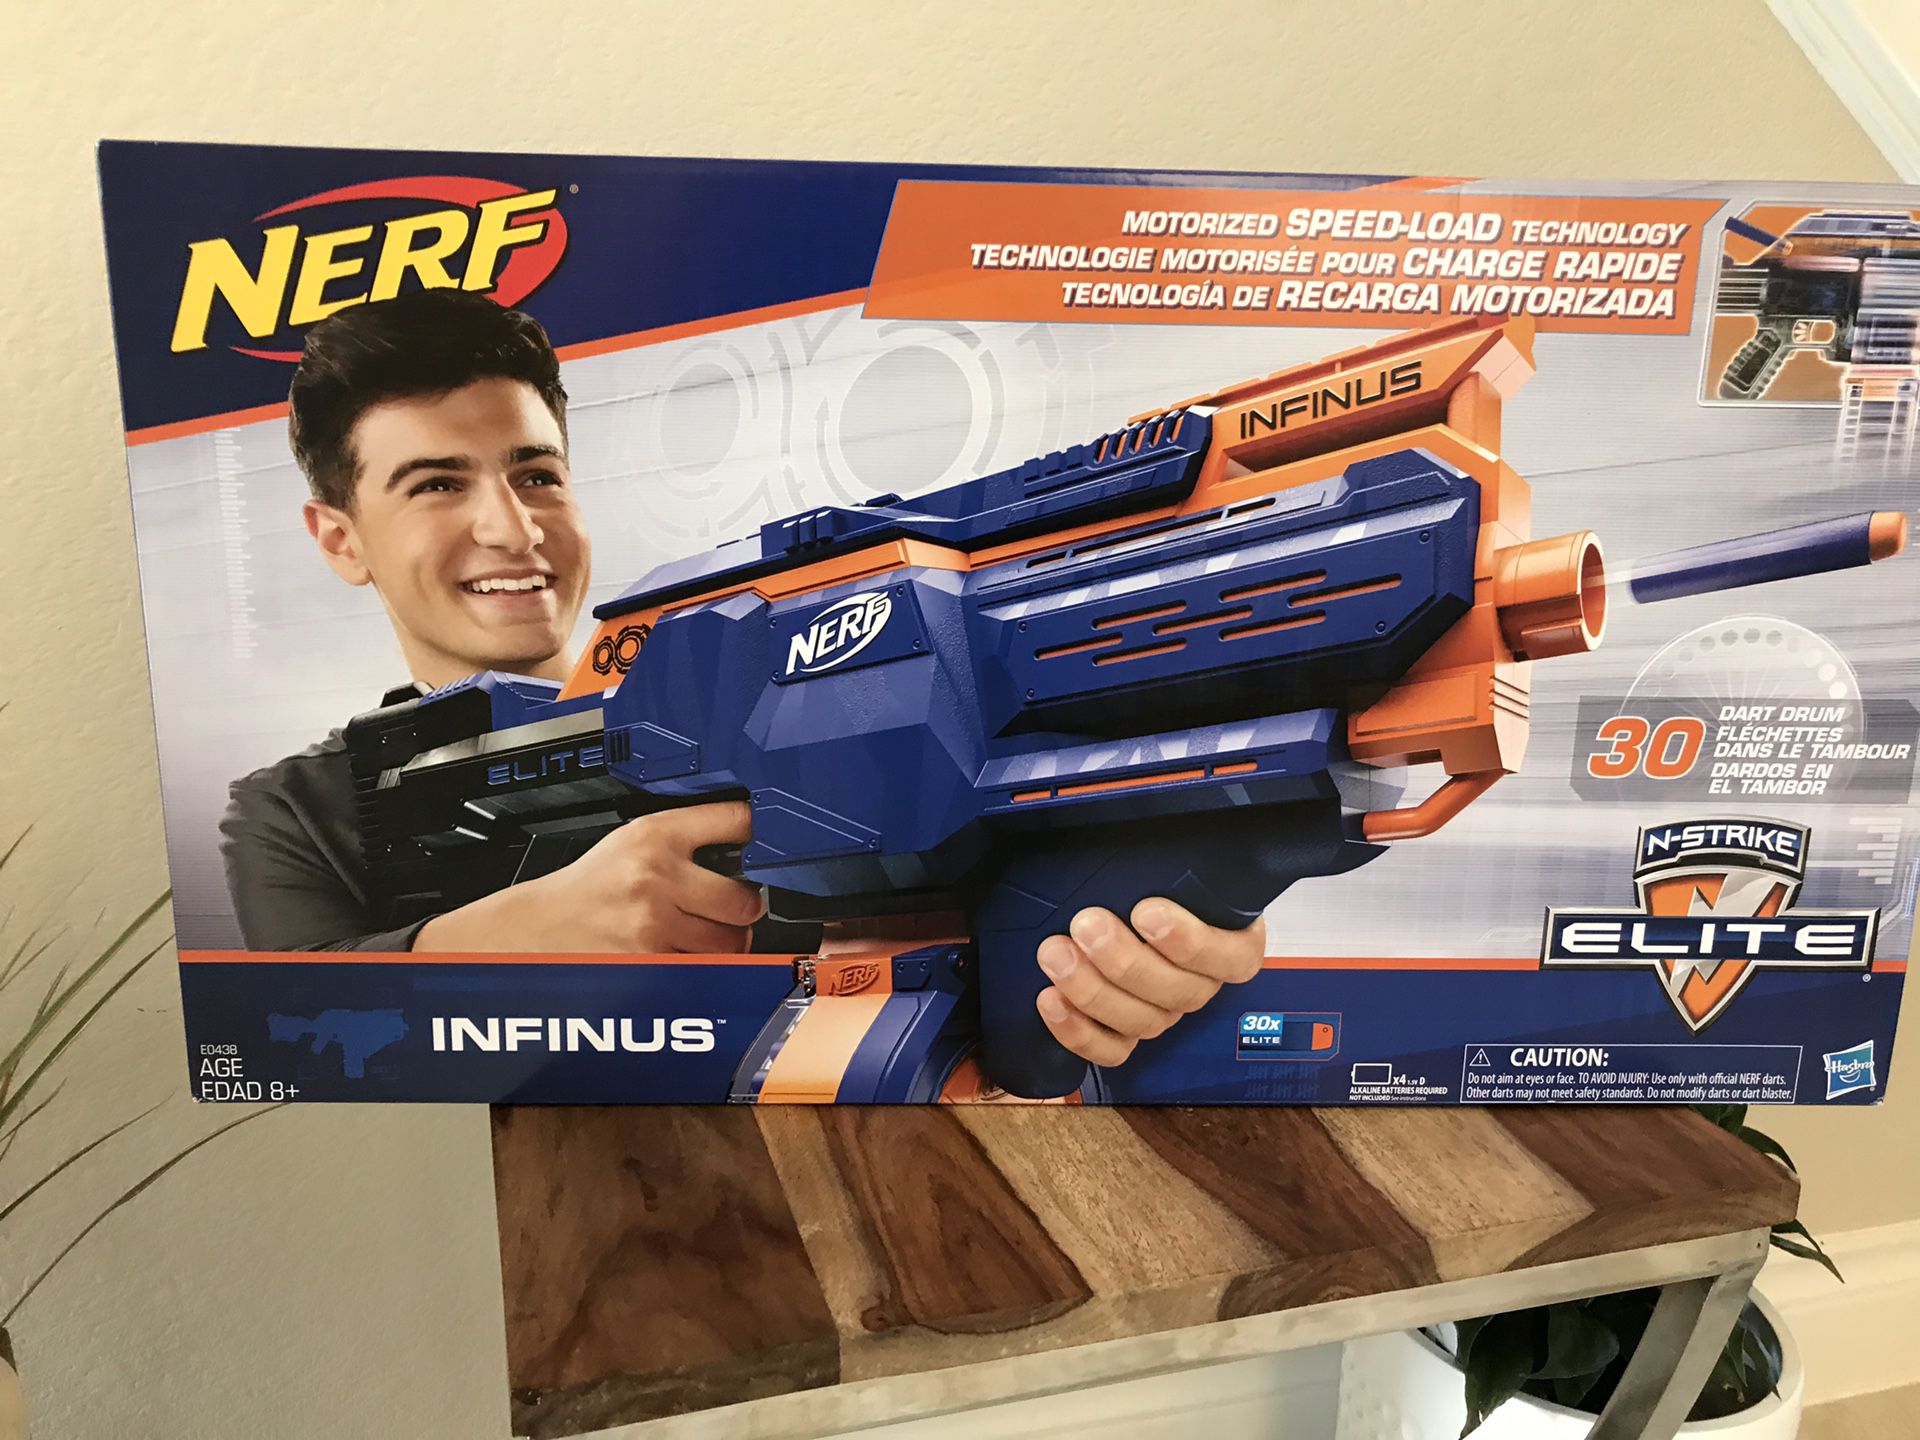 Brand new NERF Gun